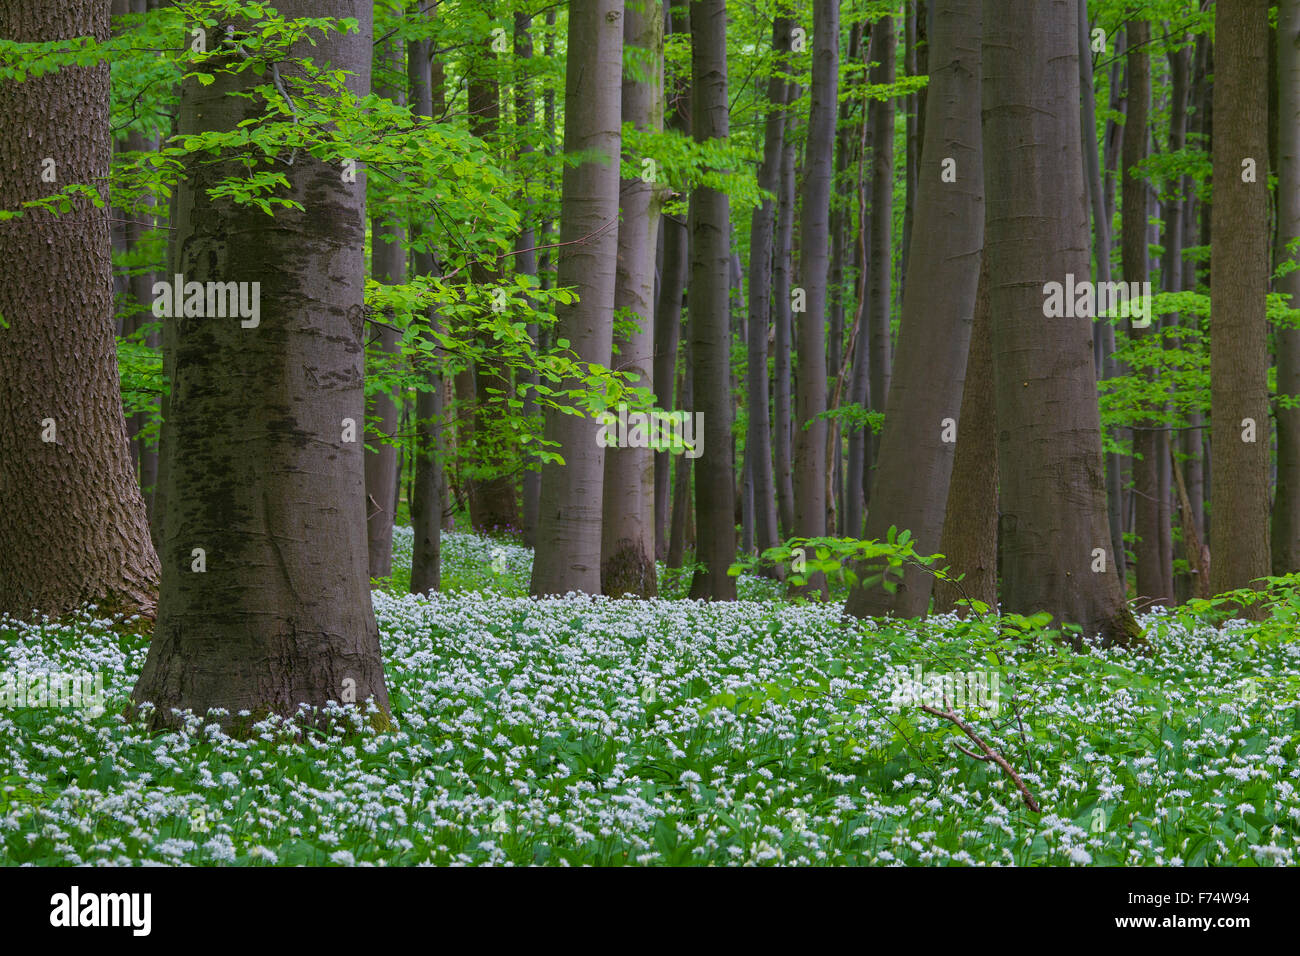 Holz-Knoblauch / Bärlauch / Bärlauch (Allium Ursinum) Blüte in Buchenwald im Frühjahr, Nationalpark Hainich, Deutschland Stockfoto